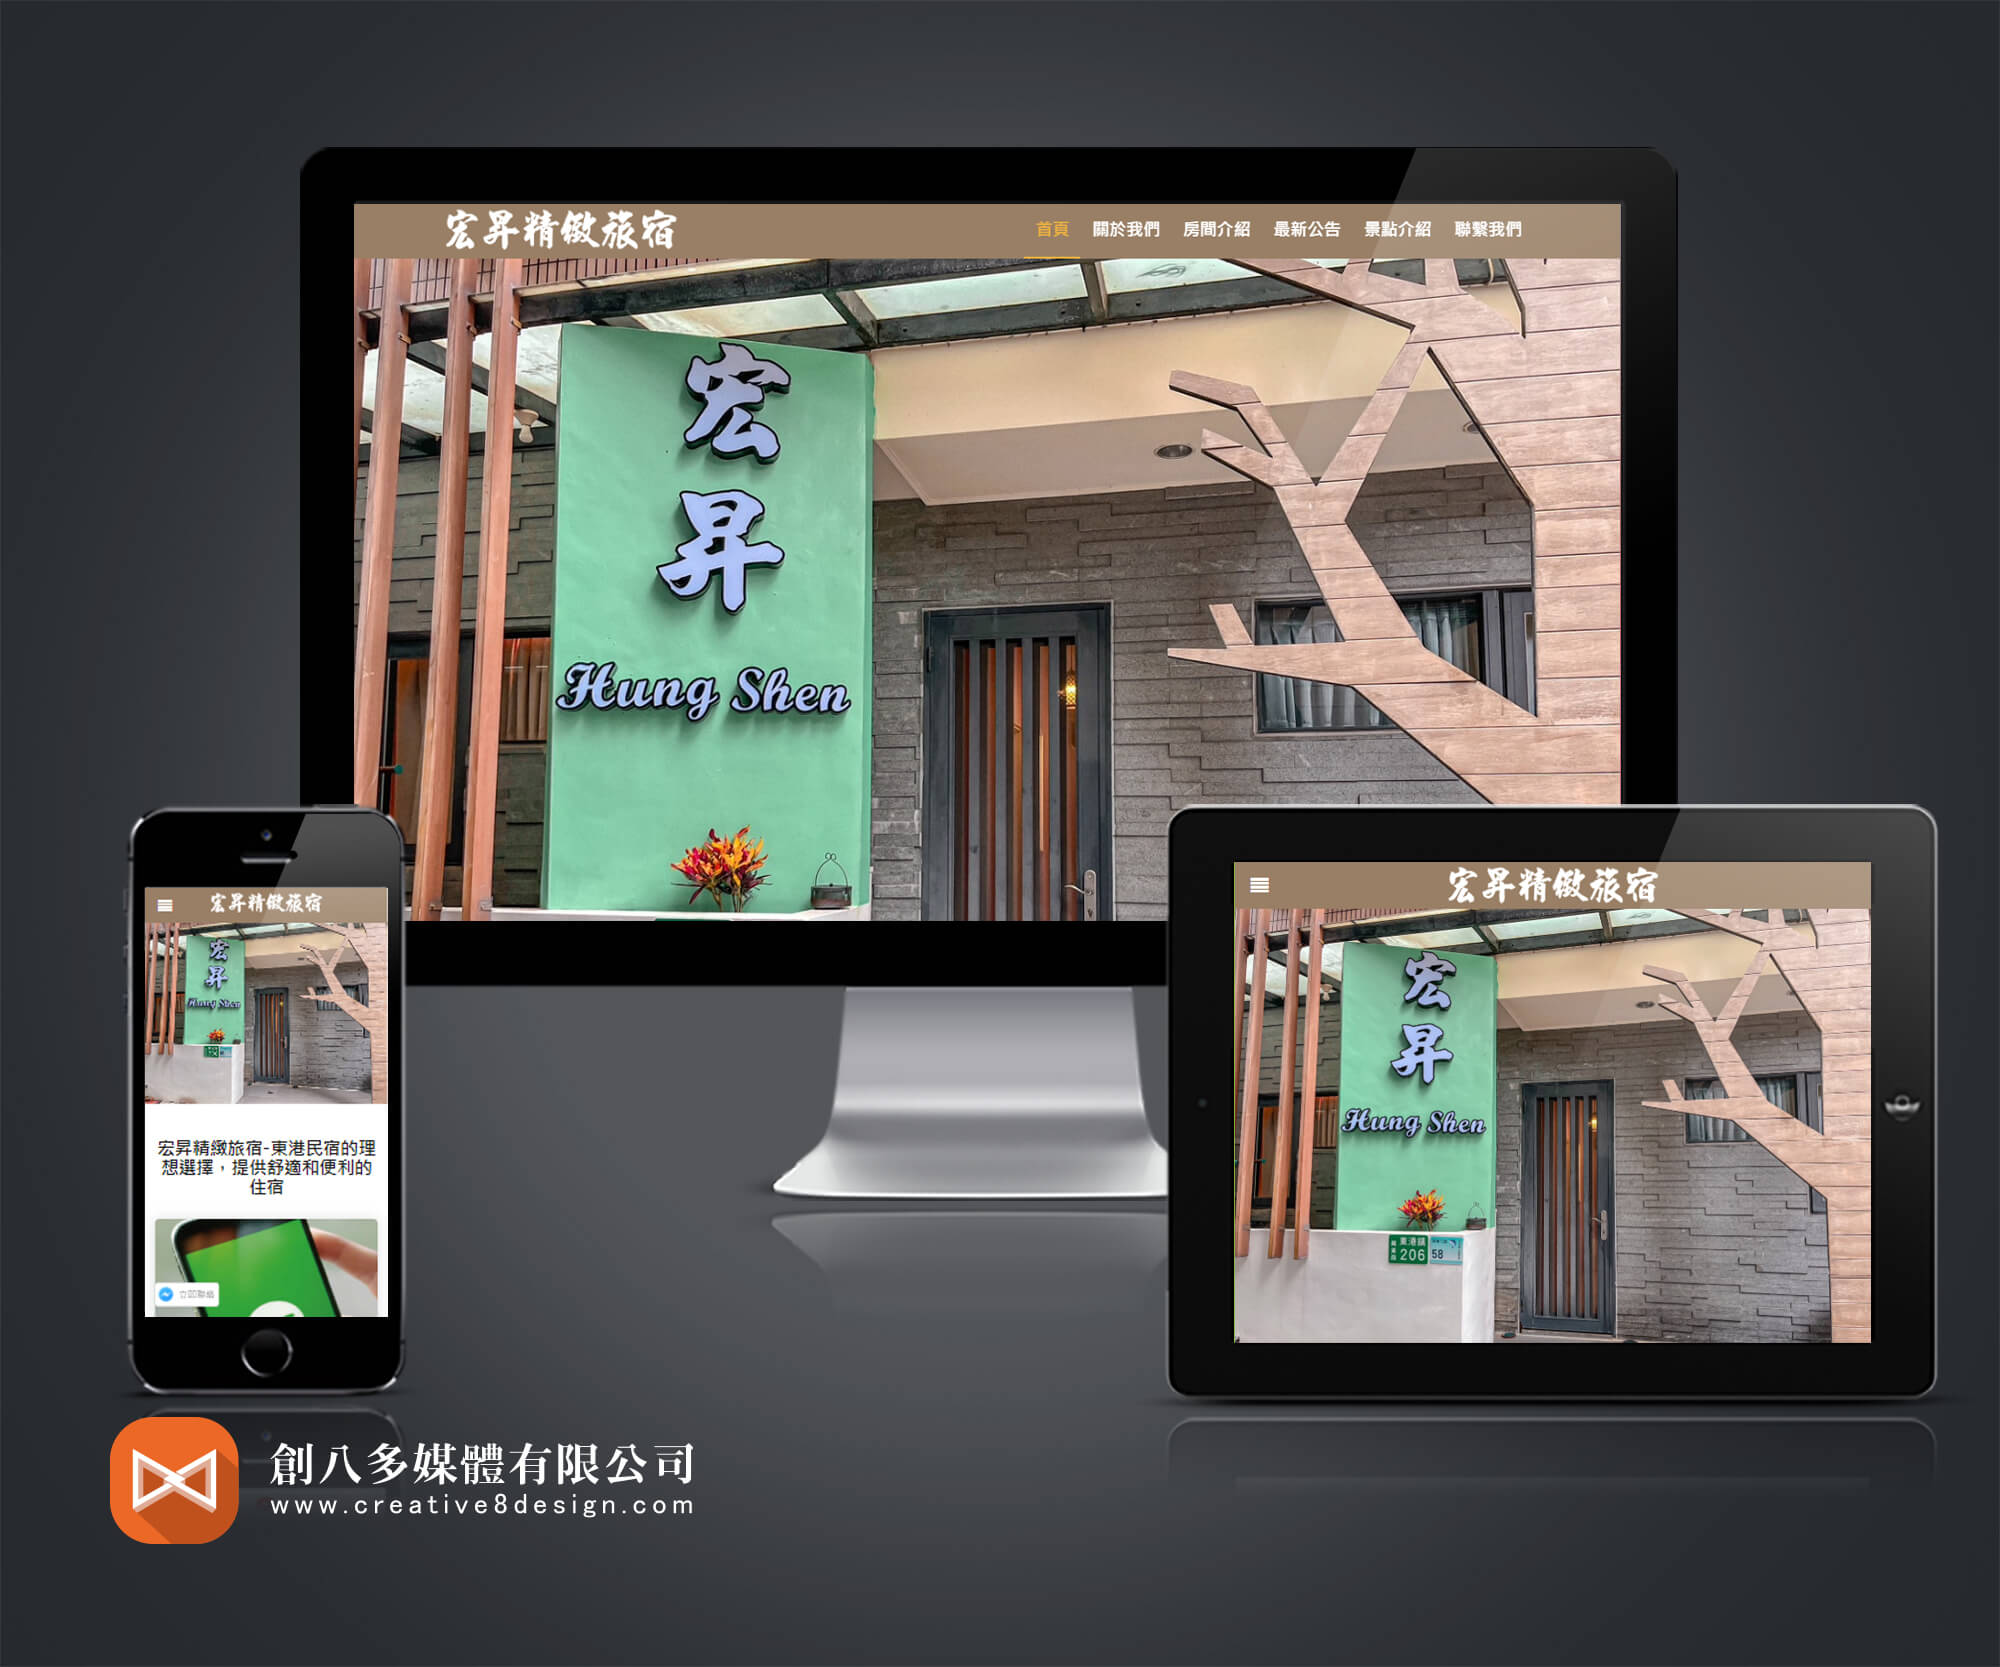 東港民宿網站製作,網頁設計推薦的案例